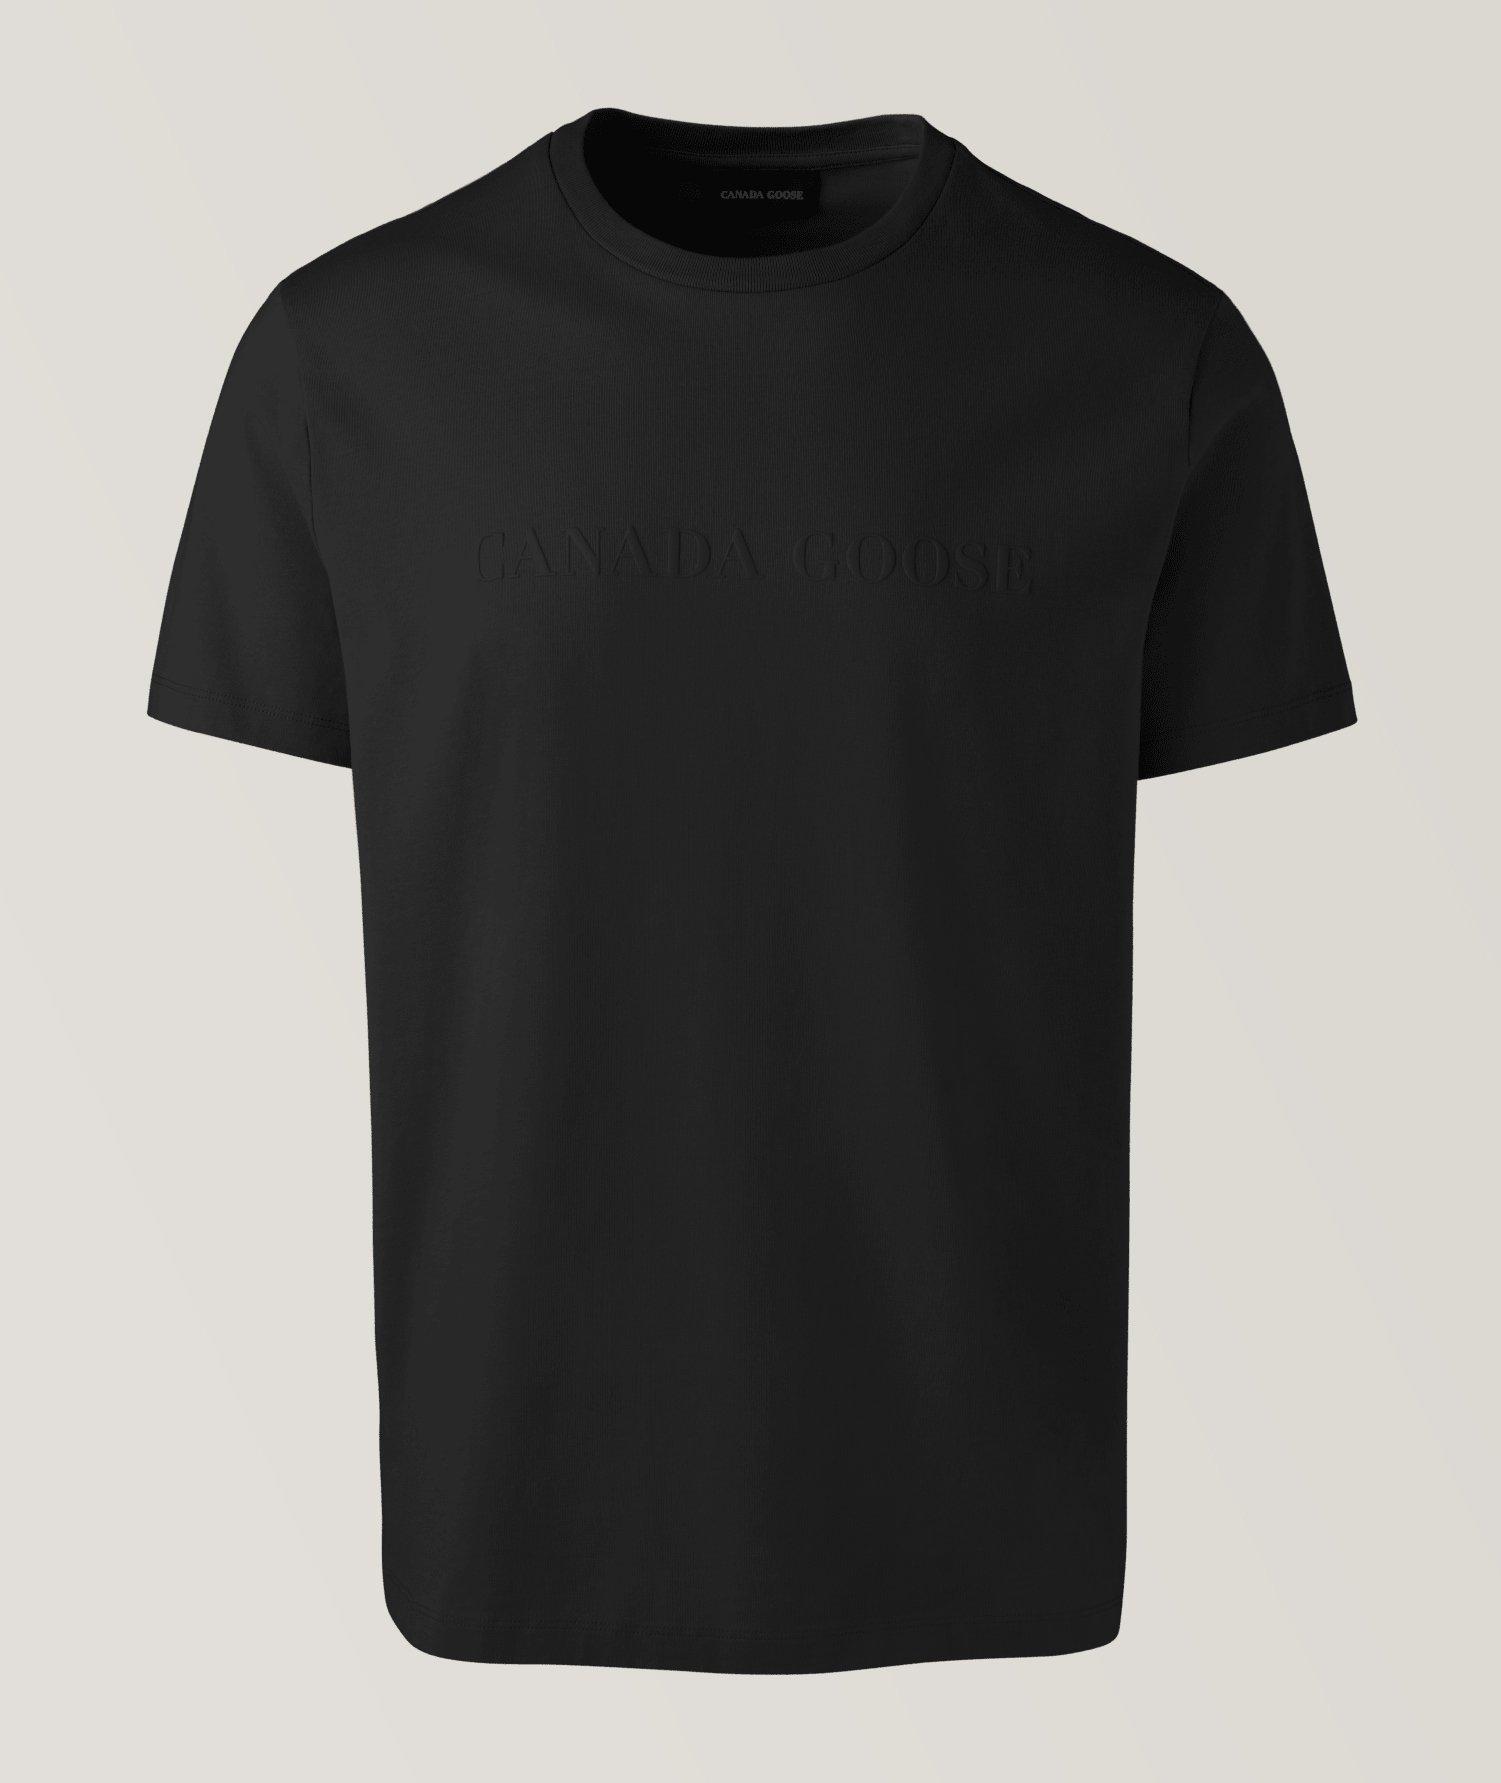 T-shirt Emerson en coton à encolure ronde image 0